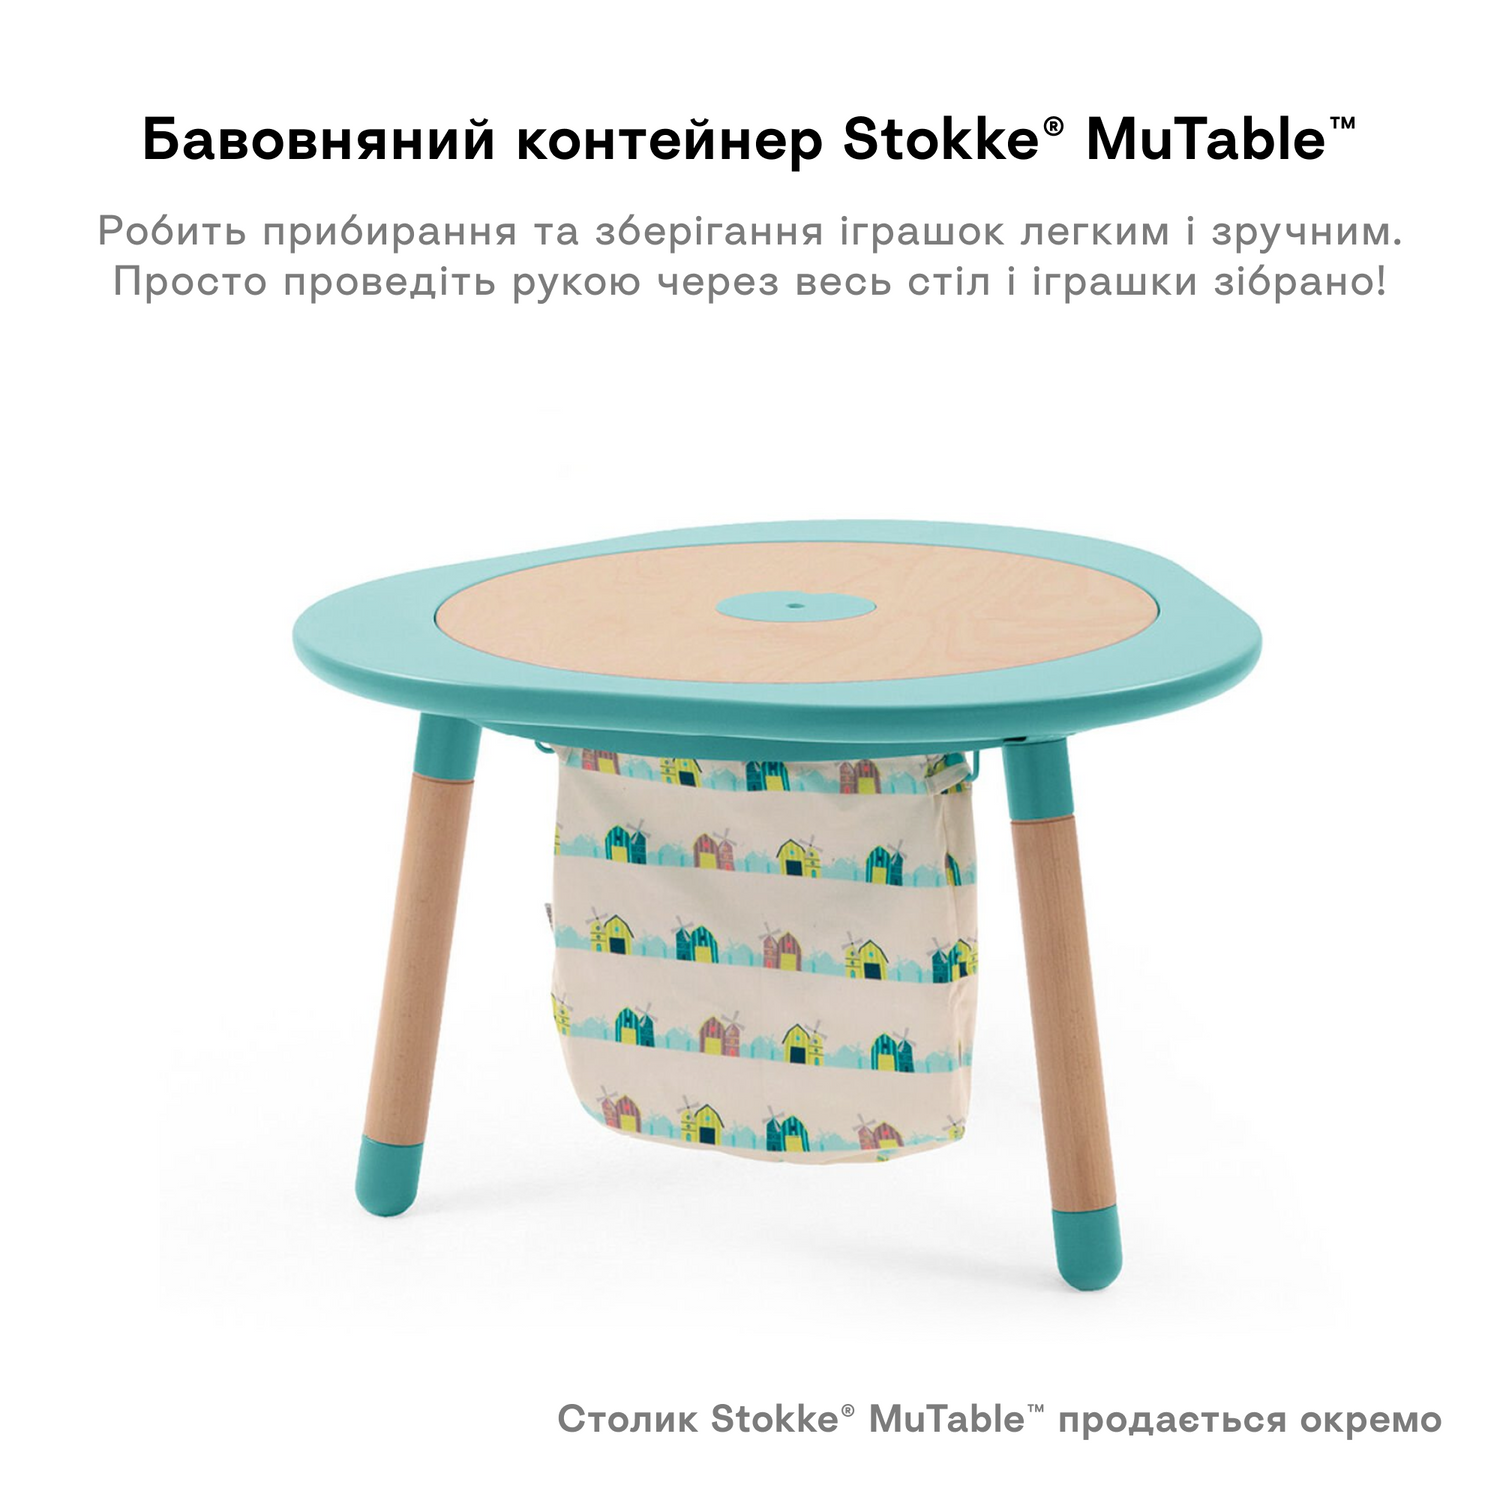 Контейнер бавовняний для іграшок Stokke MuTable, салатовий (581907) - фото 4